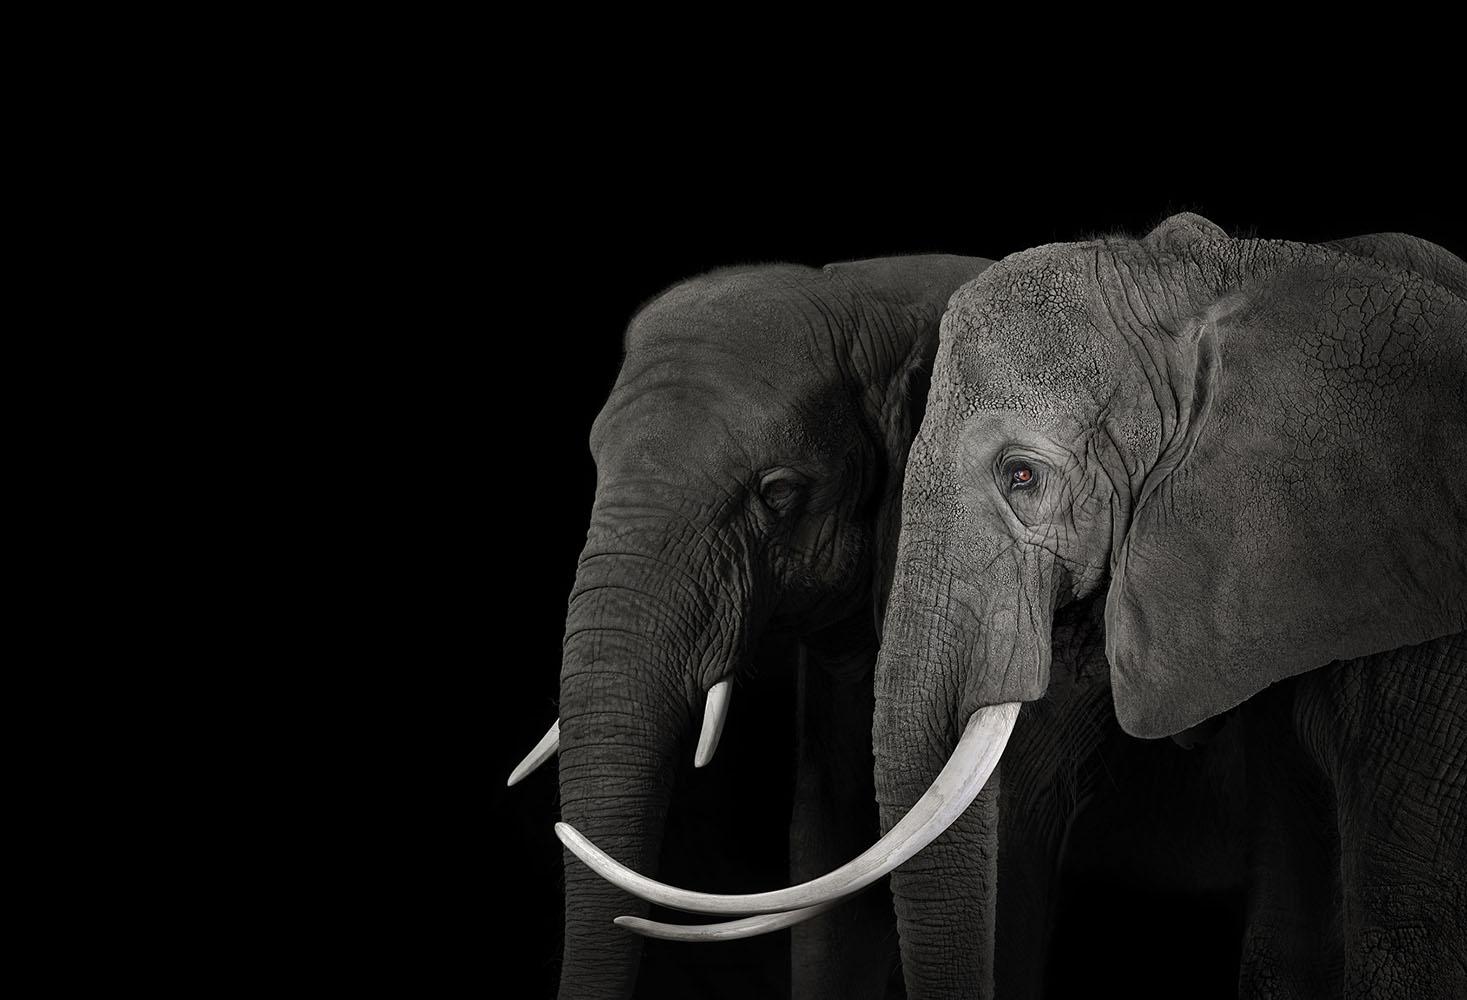 Afrikanischer Elefant #16, Monterey, Kalifornien, 2019" ist eine Fotografie des zeitgenössischen Künstlers Brad Wilson in limitierter Auflage aus der Serie "Affinity", die Studio-Porträts von Wildtieren zeigt. 

Dieses Foto wird nur als ungerahmter